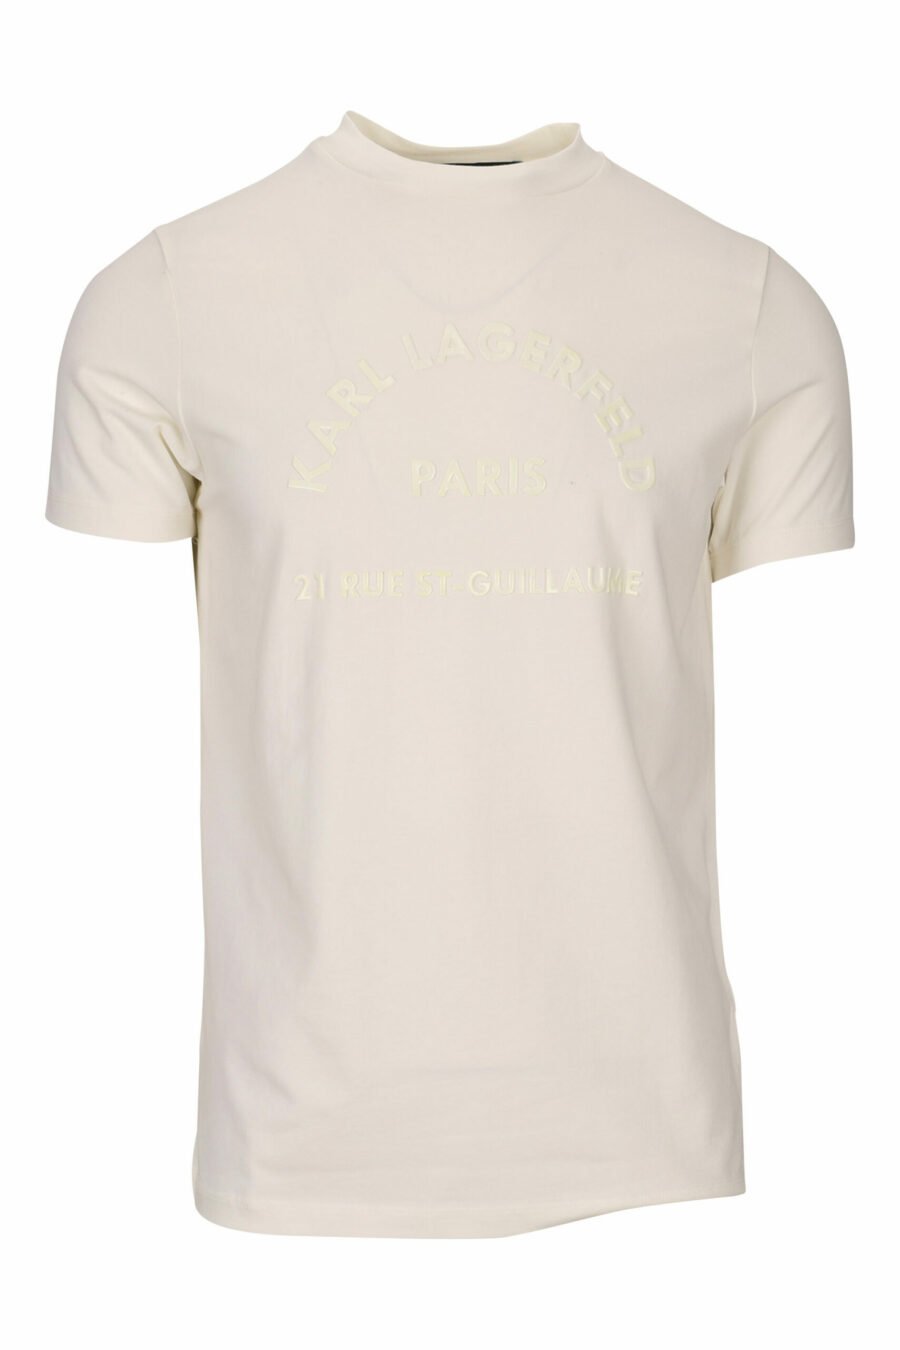 Camiseta blanca con maxilogo monocromático "rue st guillaume" - 4062226678124 scaled